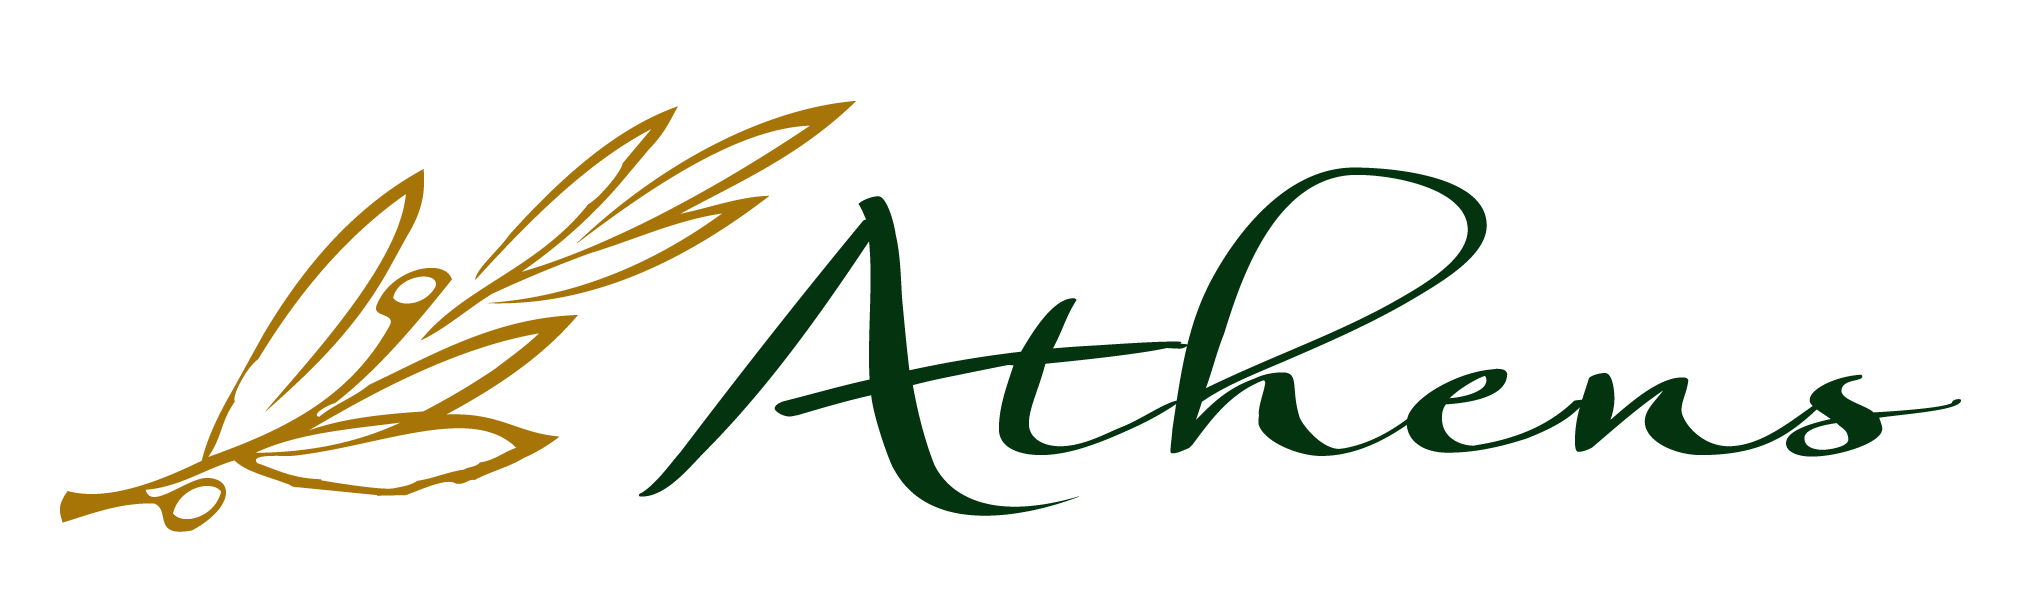 Athenian Logo - Athens